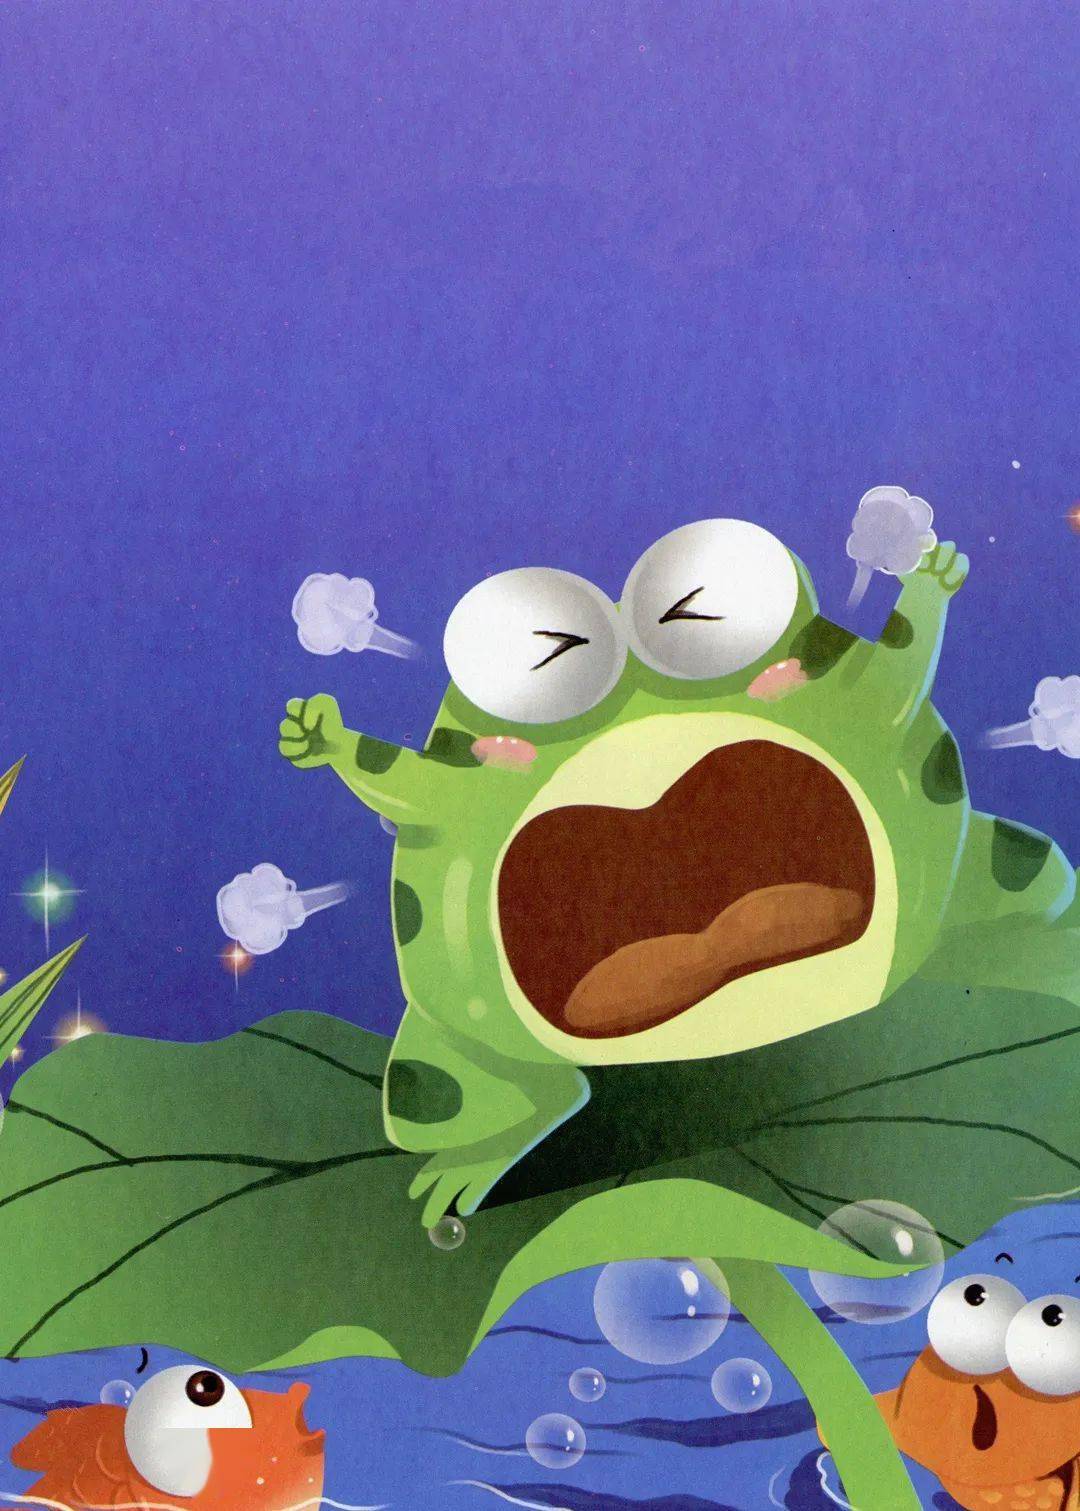 突然跳出一只小青蛙,睁着大眼睛,张着大嘴巴:我来啦!快讲吧!